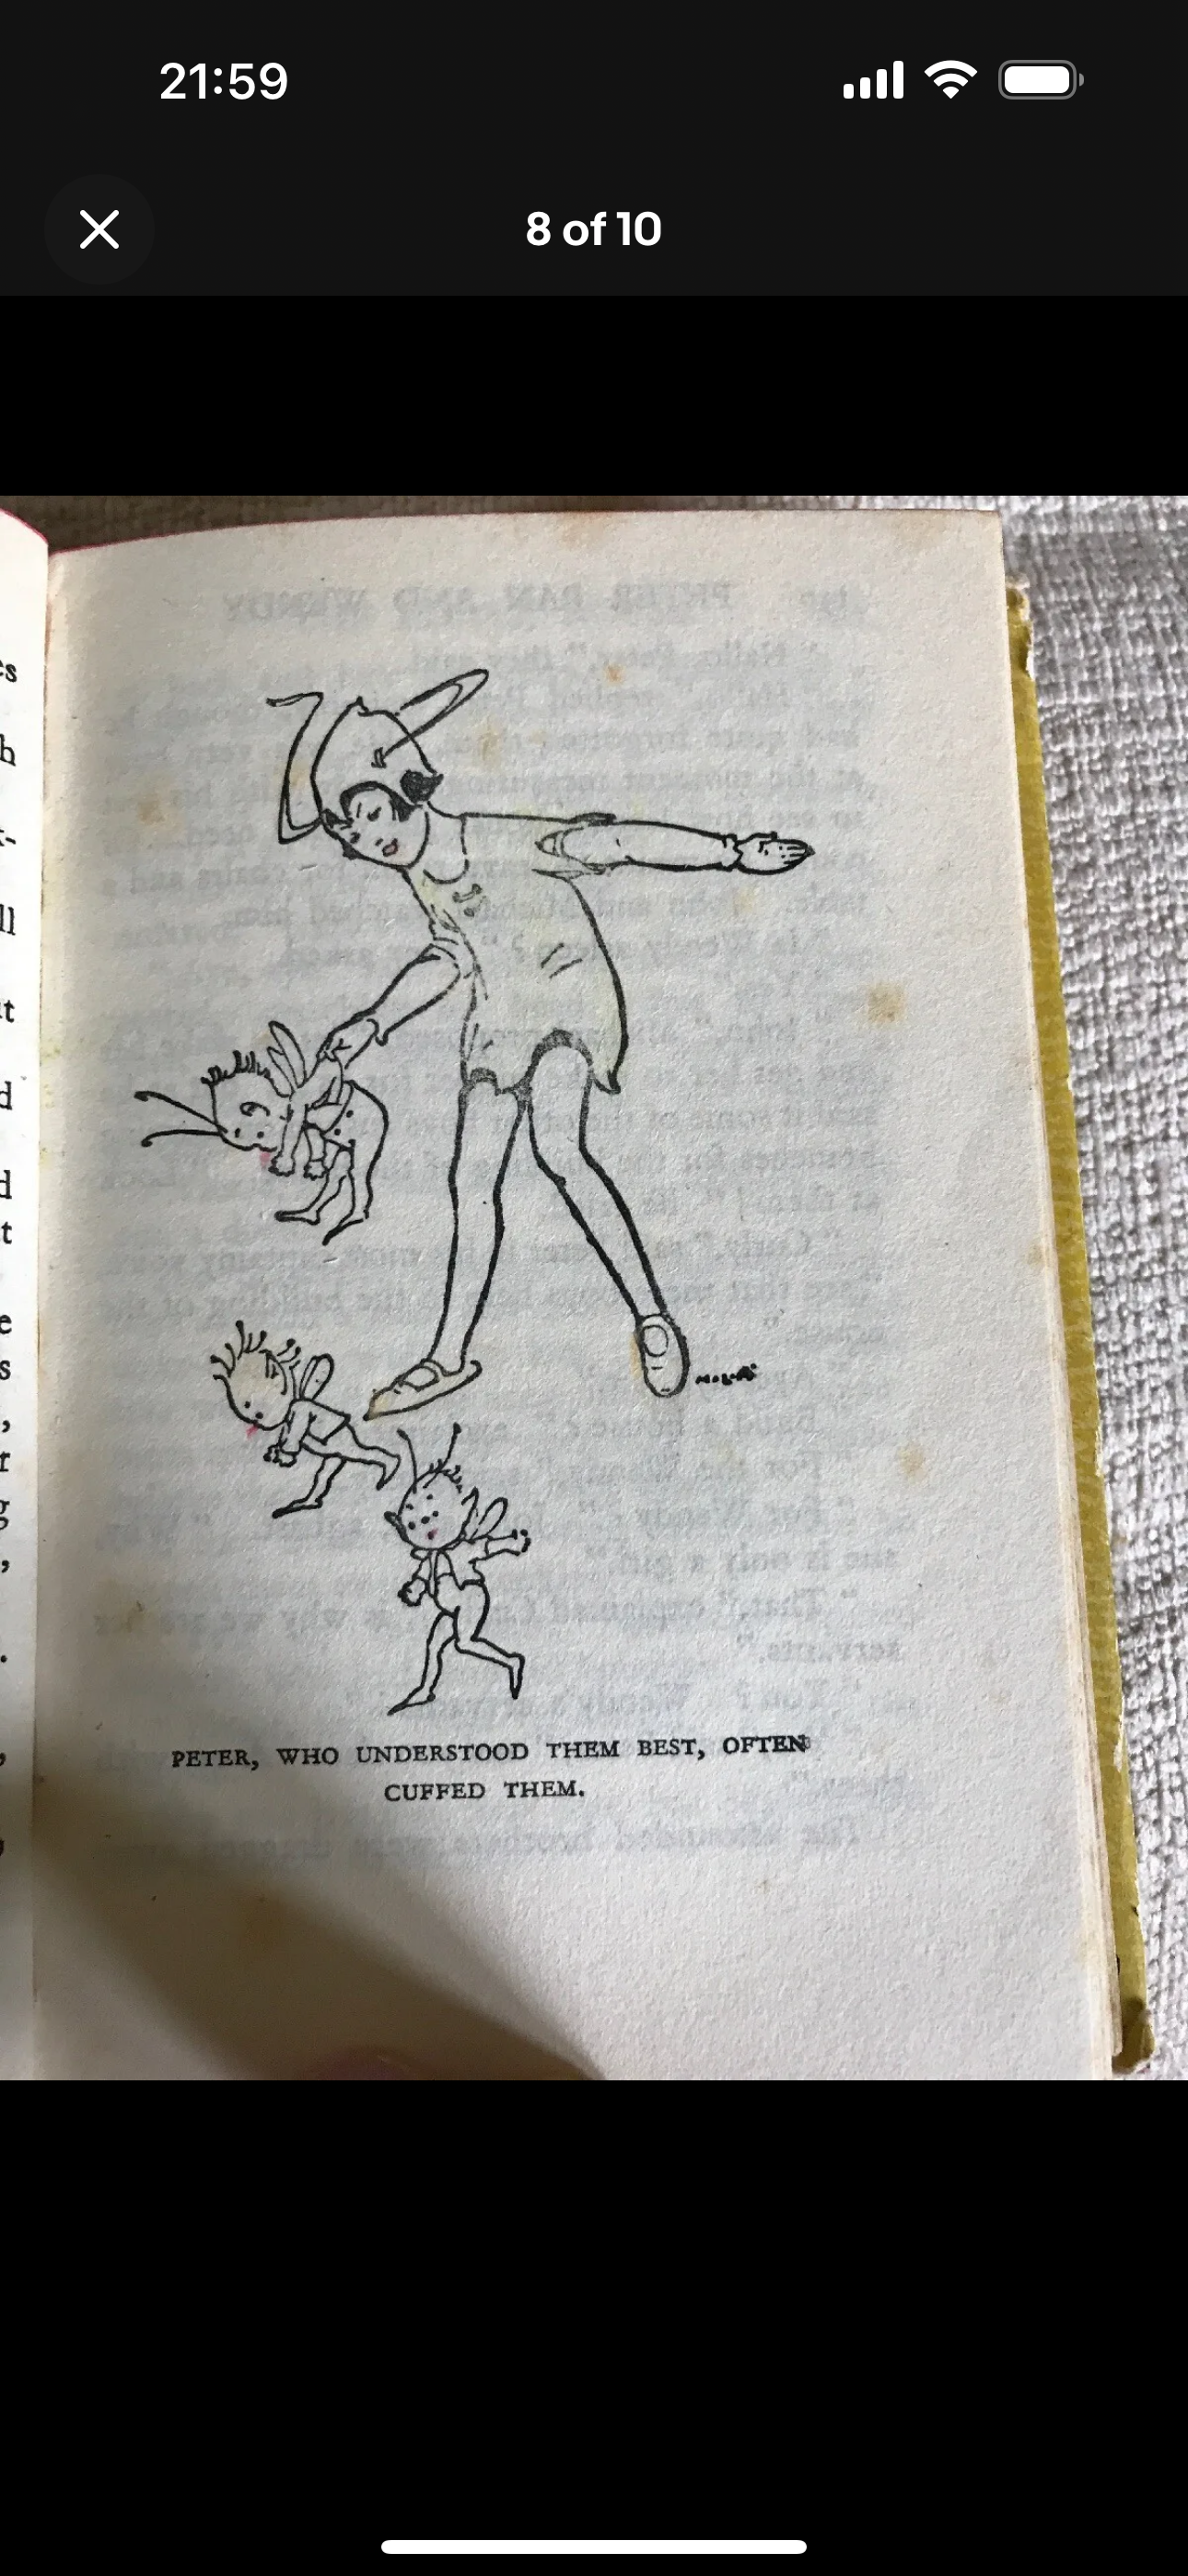 1936 J. M. Barrie’s Peter Pan & Wendy (H & S) Uniform Series Honeyburn Books (UK)